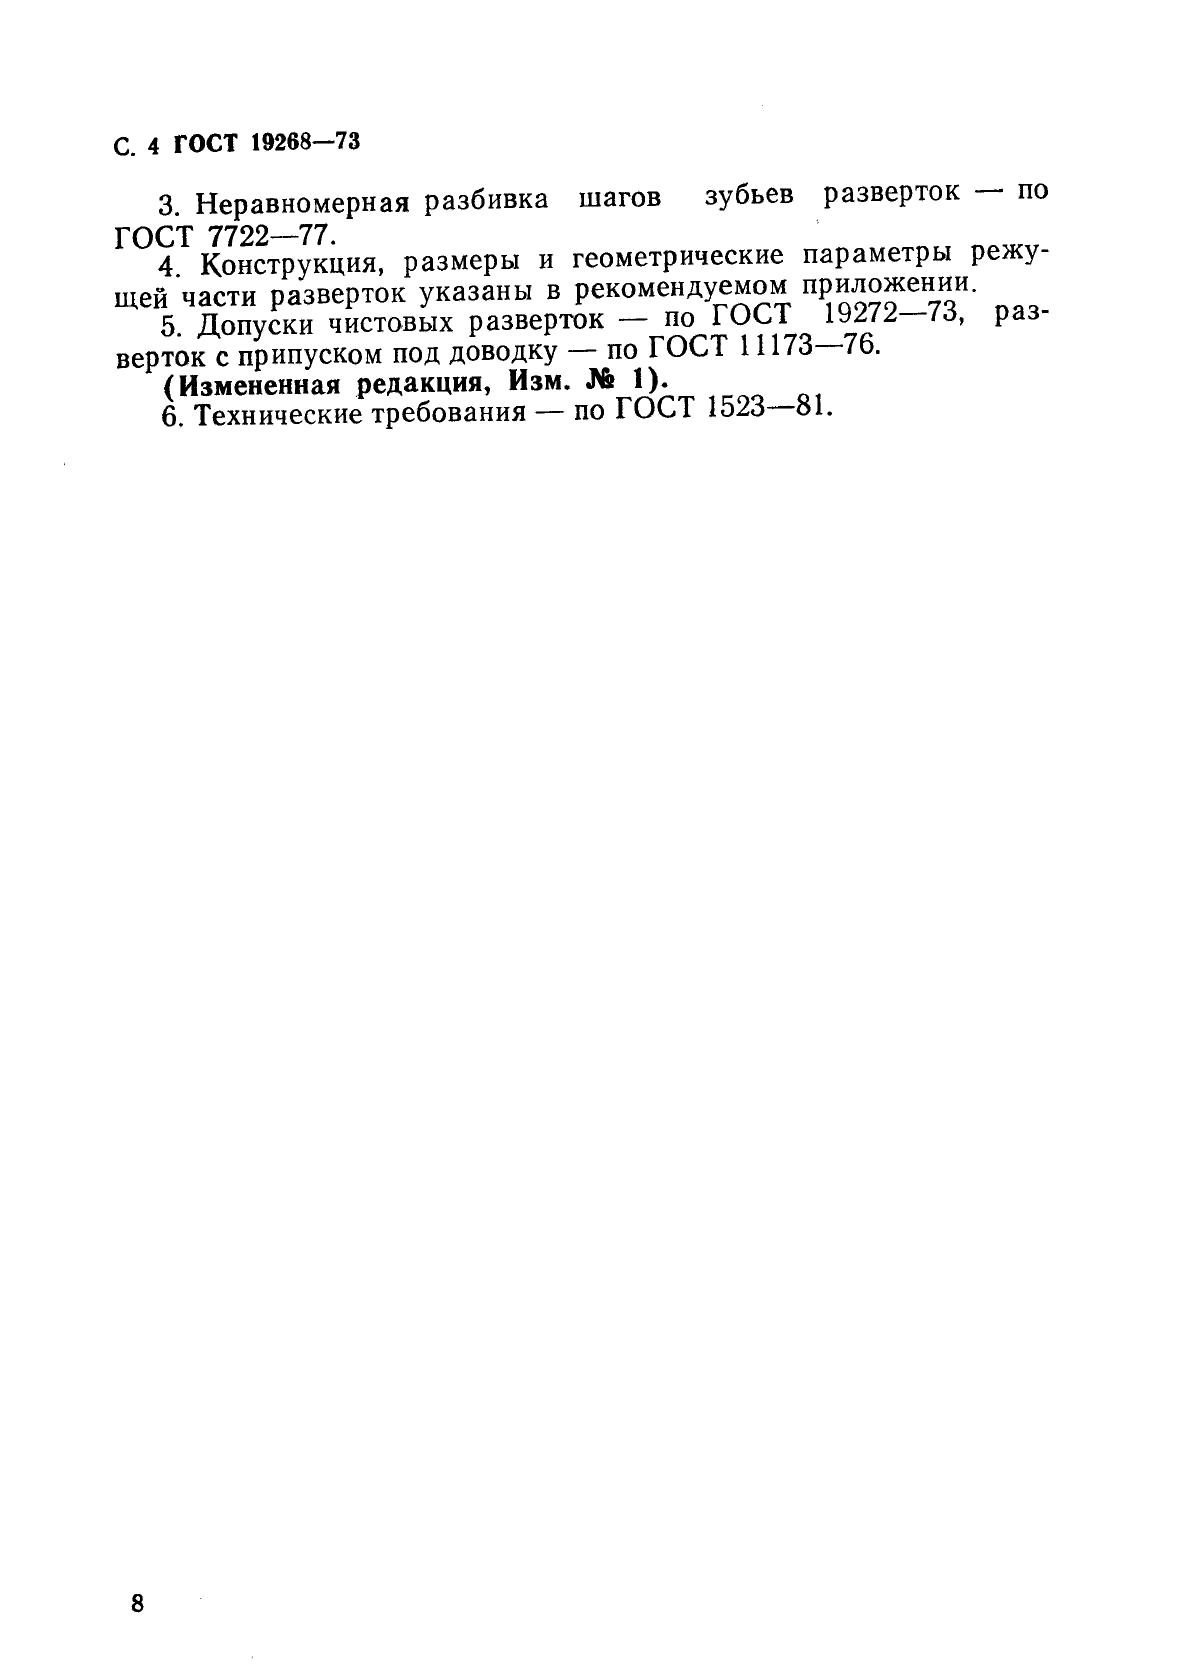 ГОСТ 19268-73, страница 4.